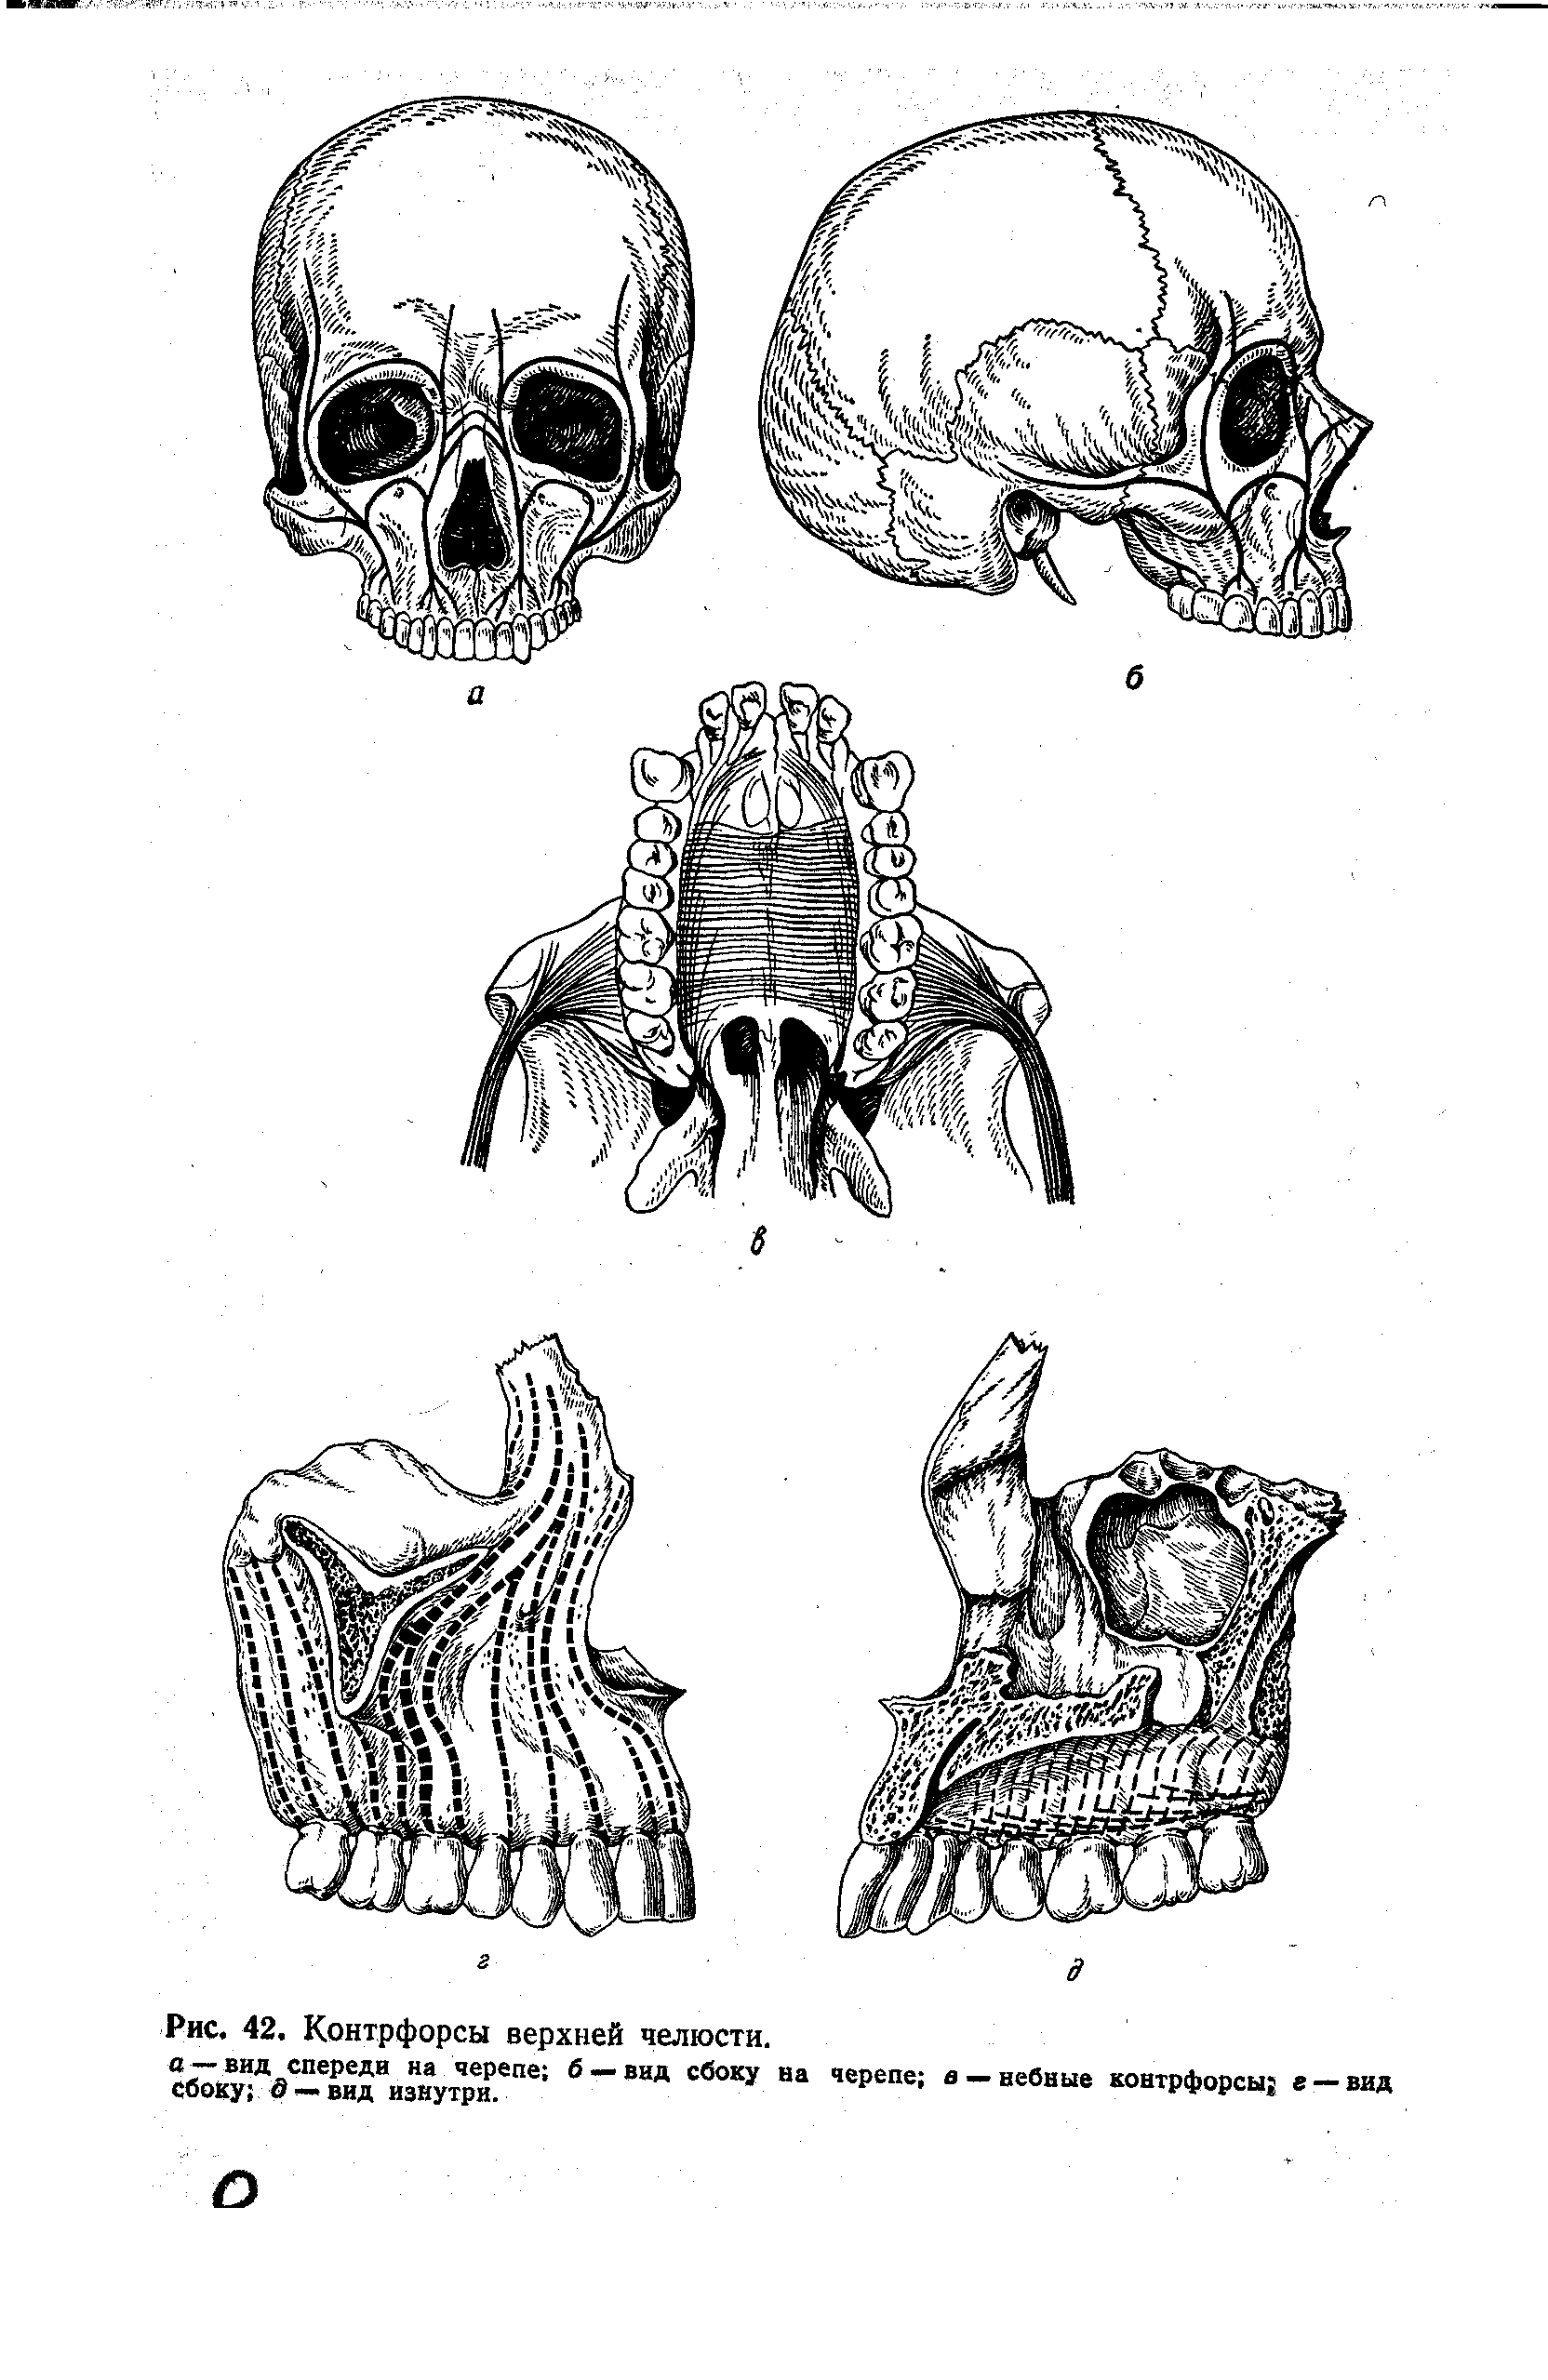 Рис. 42. Контрфорсы верхней челюсти, авид спереди на черепе б —вид сбоку на Сбоку о —вид изнутри.